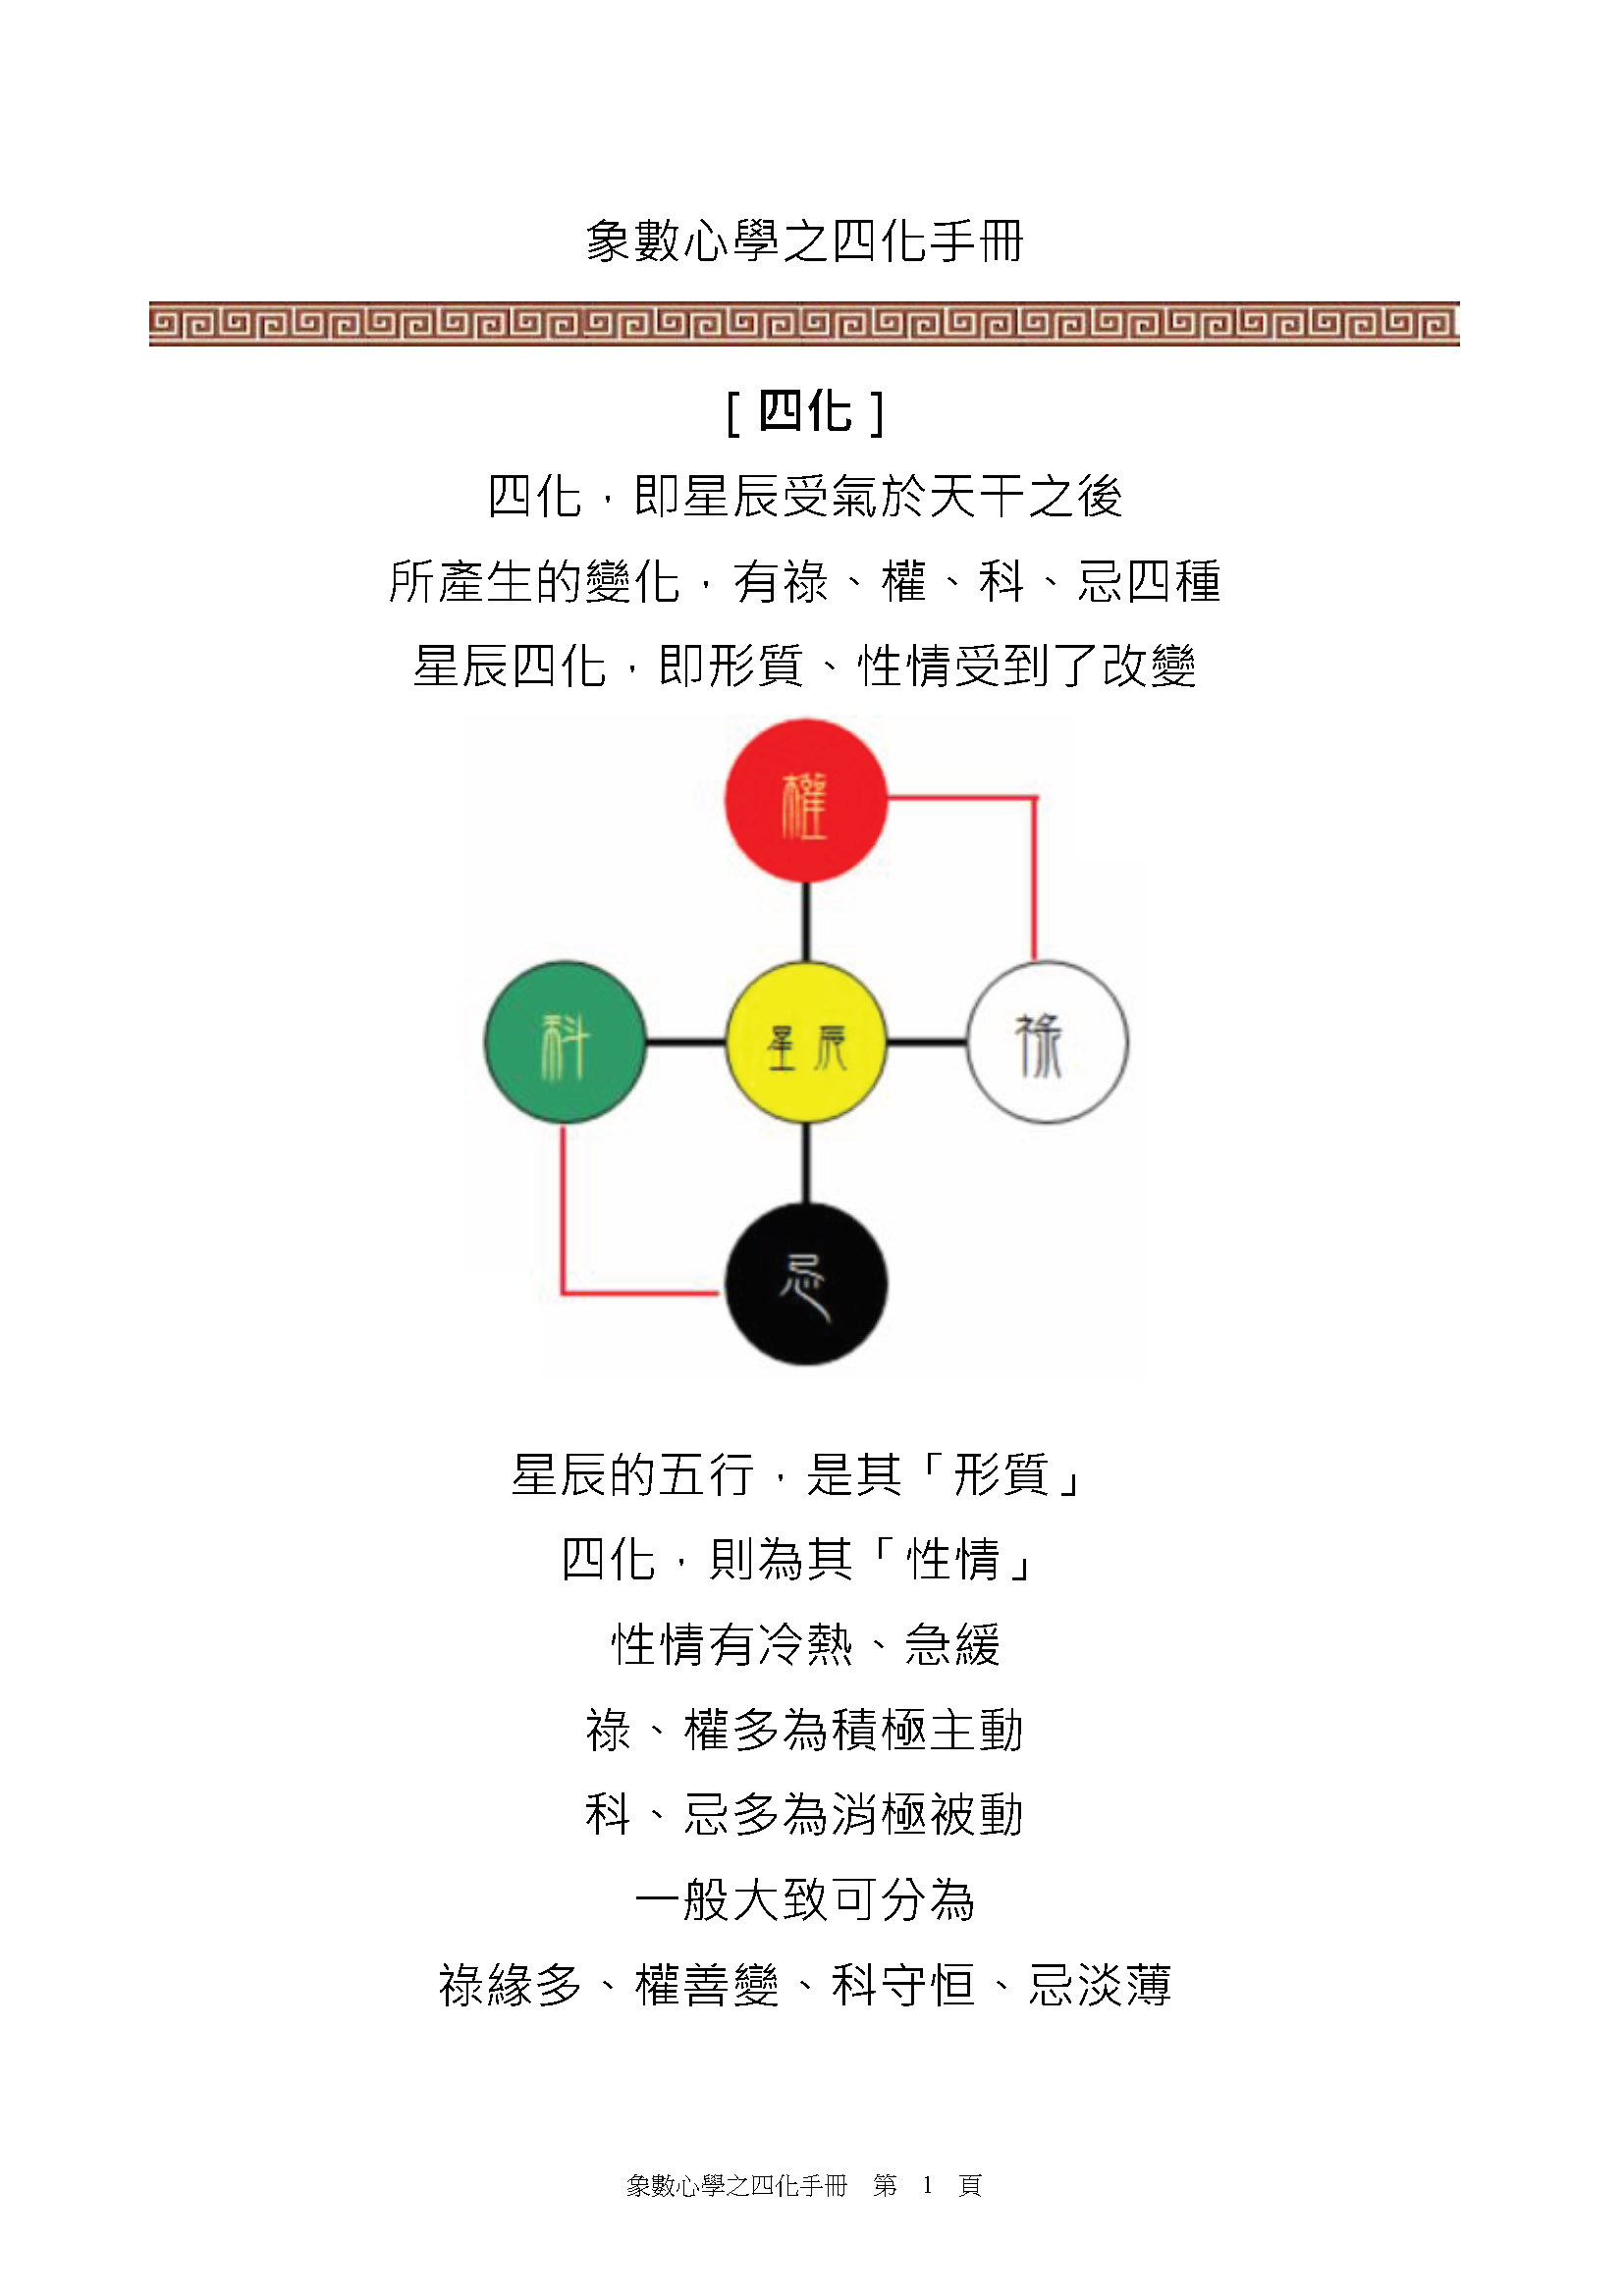 刘金府 象数心学之四化手册